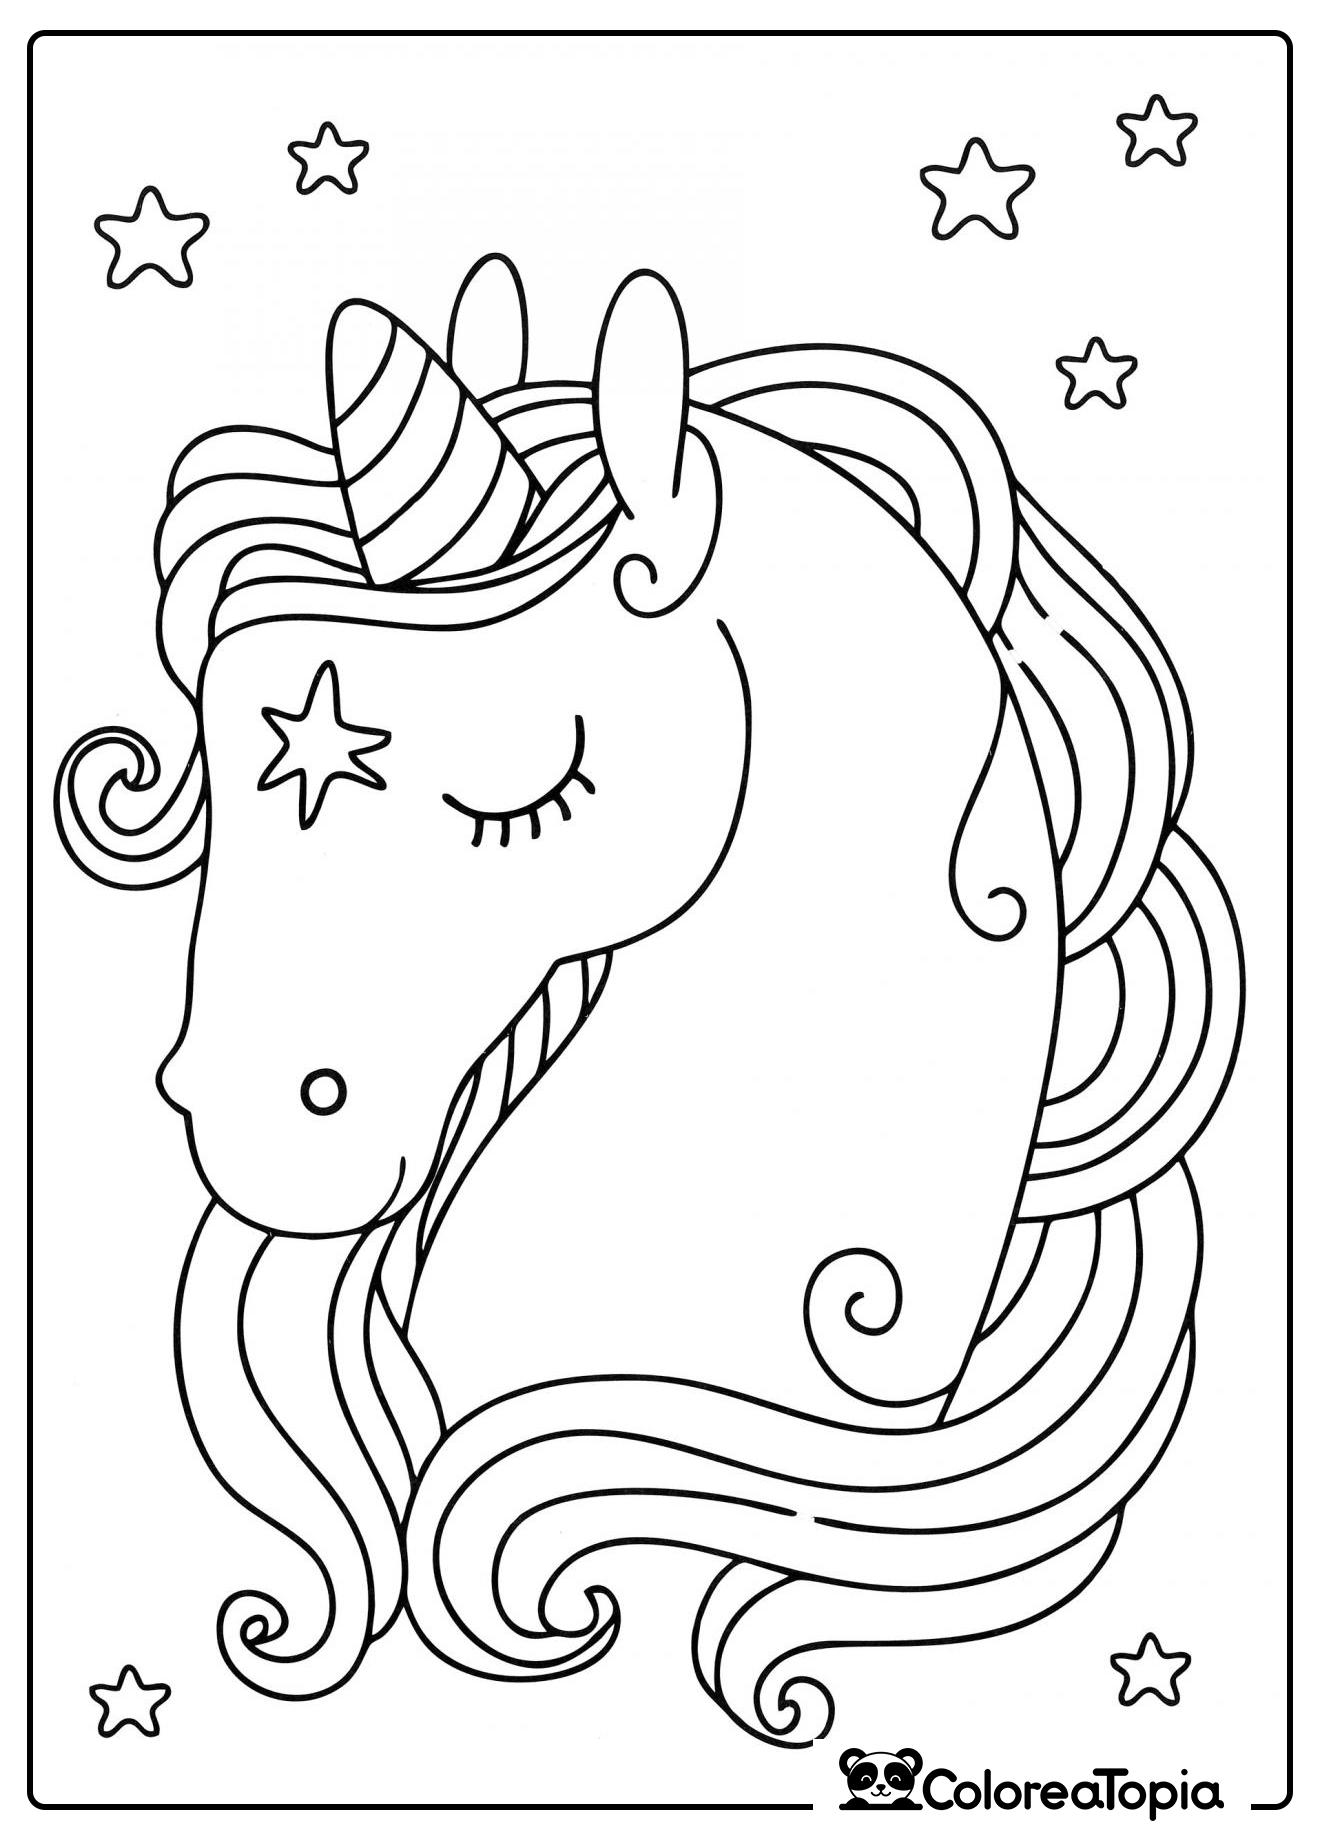 Unicornio hermoso - dibujo para colorear